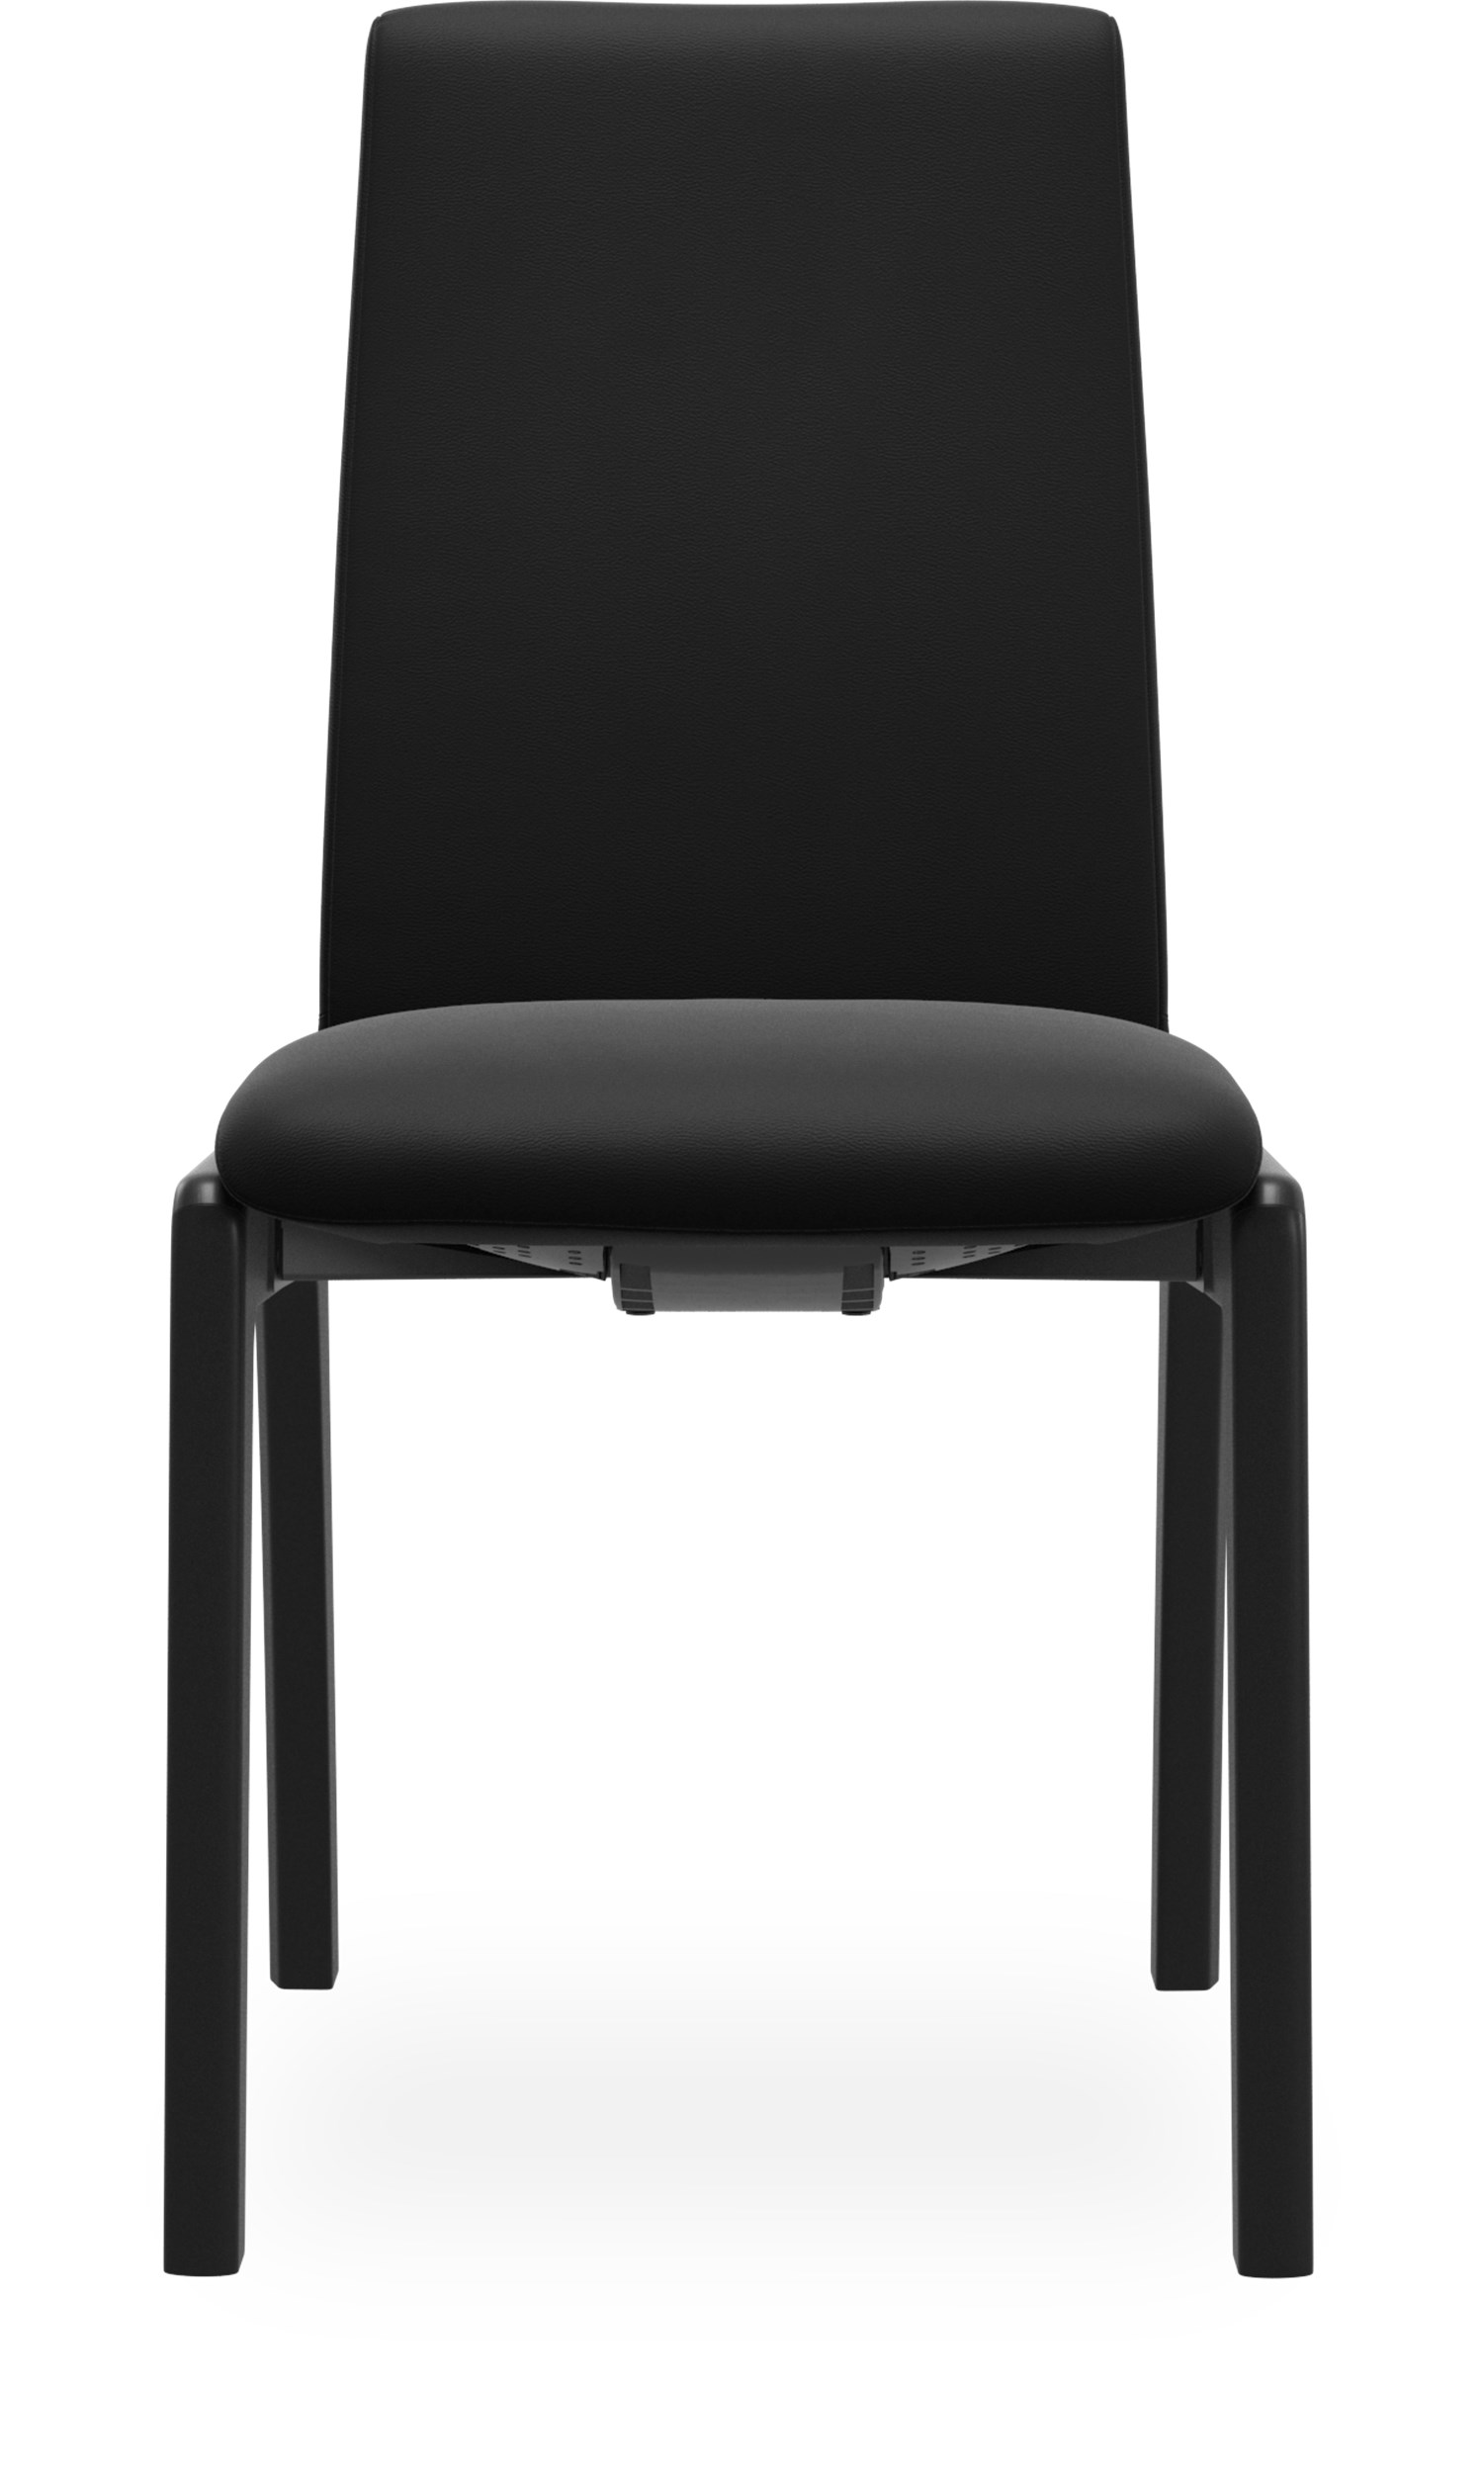 Stressless M D100 Laurel low Spisebordsstol - Paloma 9419 Black læder og stel i lakeret, massiv sortbejdset bøg